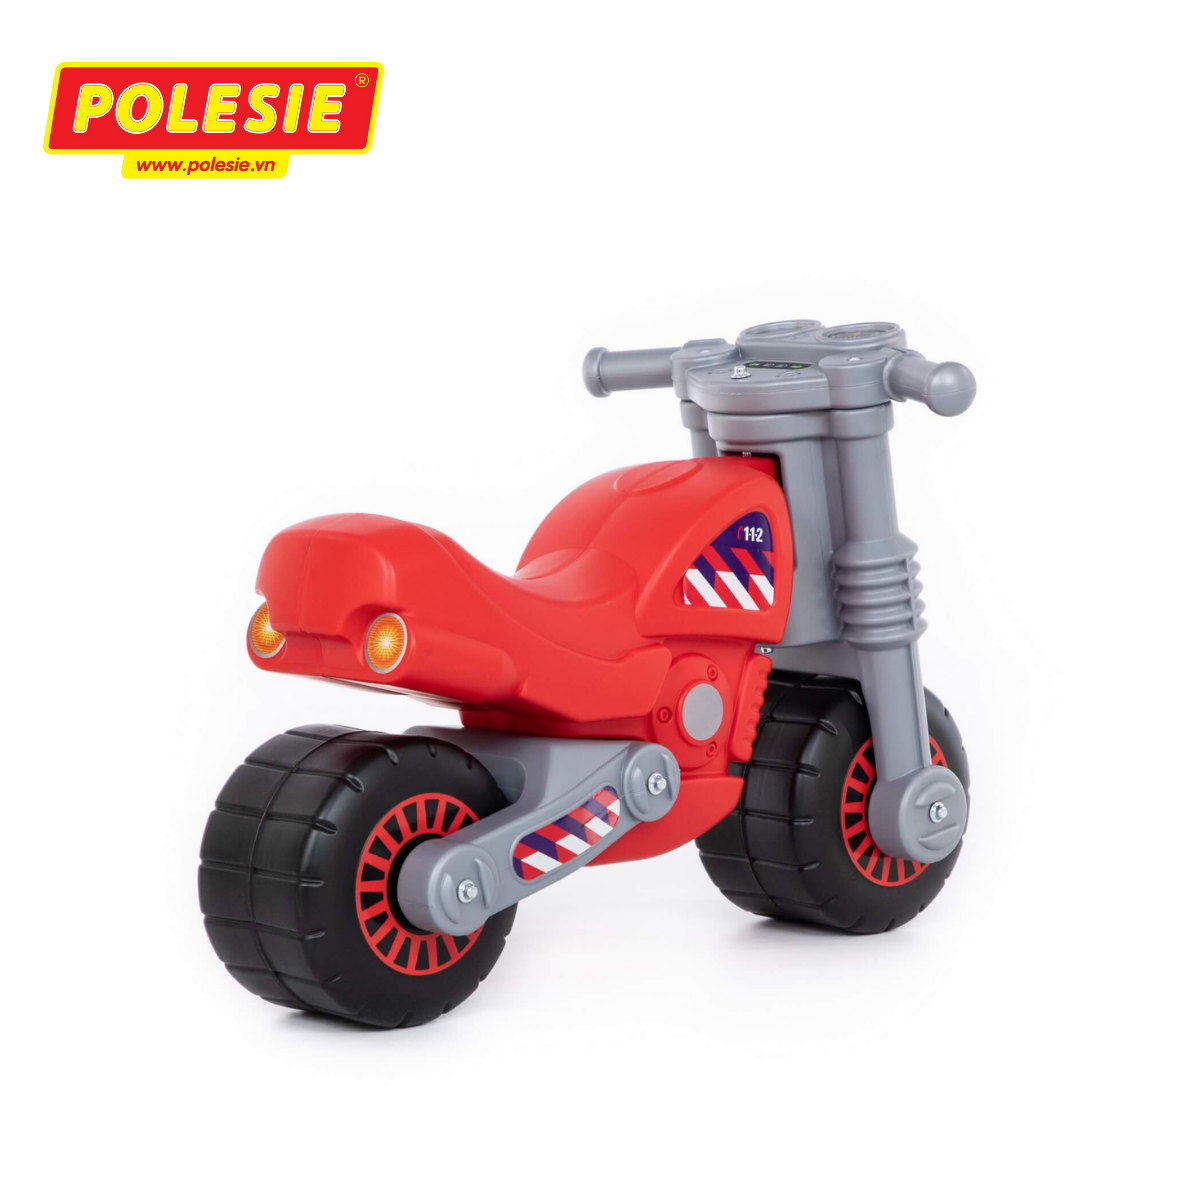 Xe chòi chân mô tô Brand 78650 màu Đỏ - Polesie Toys